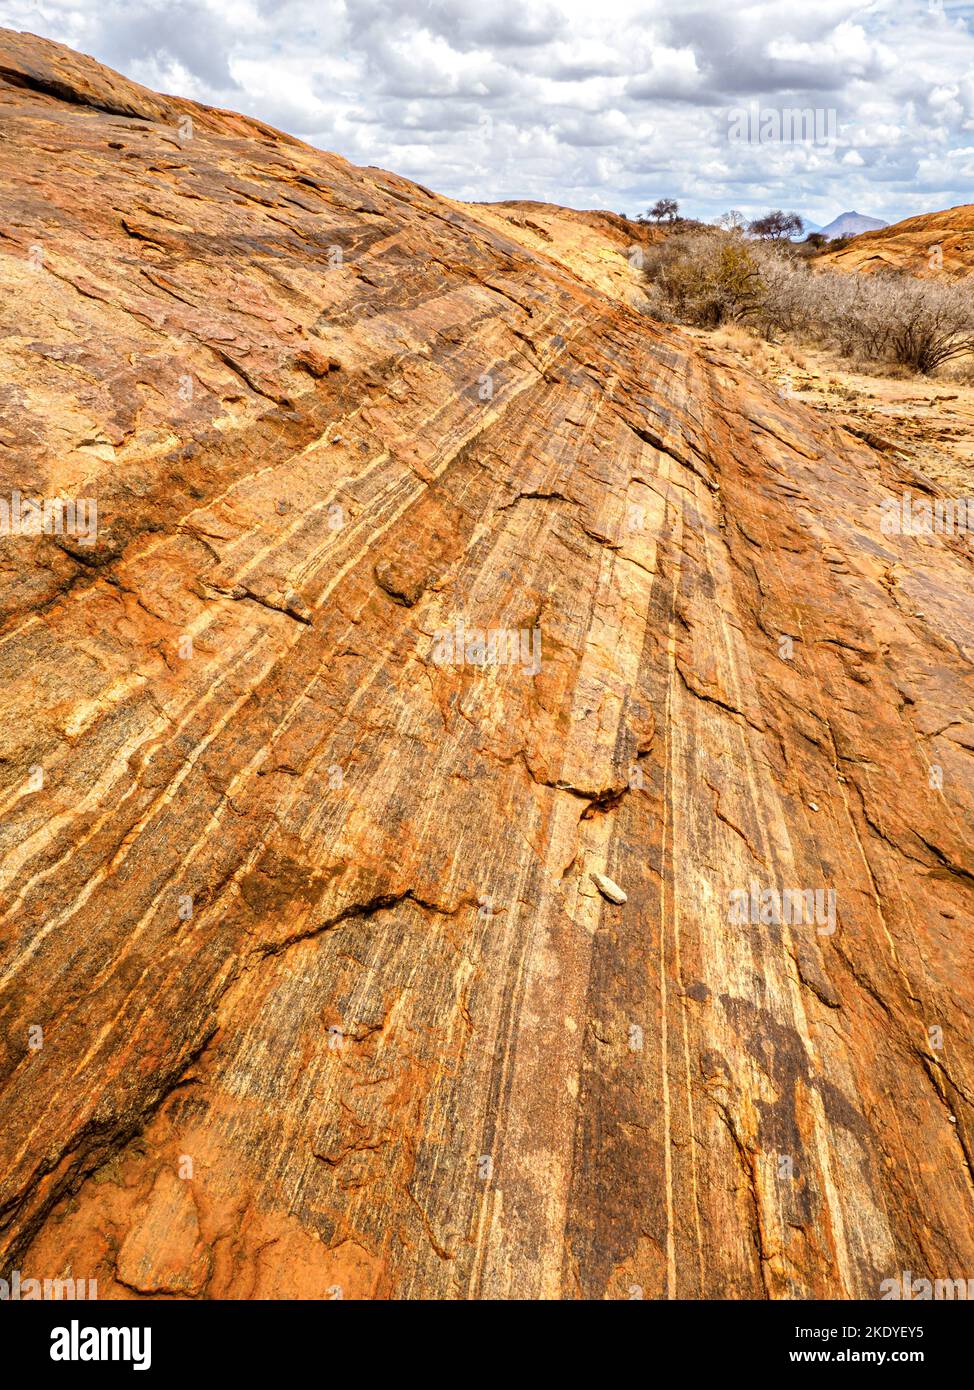 Mudanda Rock en el Parque Nacional Tsavo Este es un inselberg precámbrico de 1,5 km de largo de rocas metamórficas cristalinas que se elevan desde la llanura de Ndara en Kenia Foto de stock